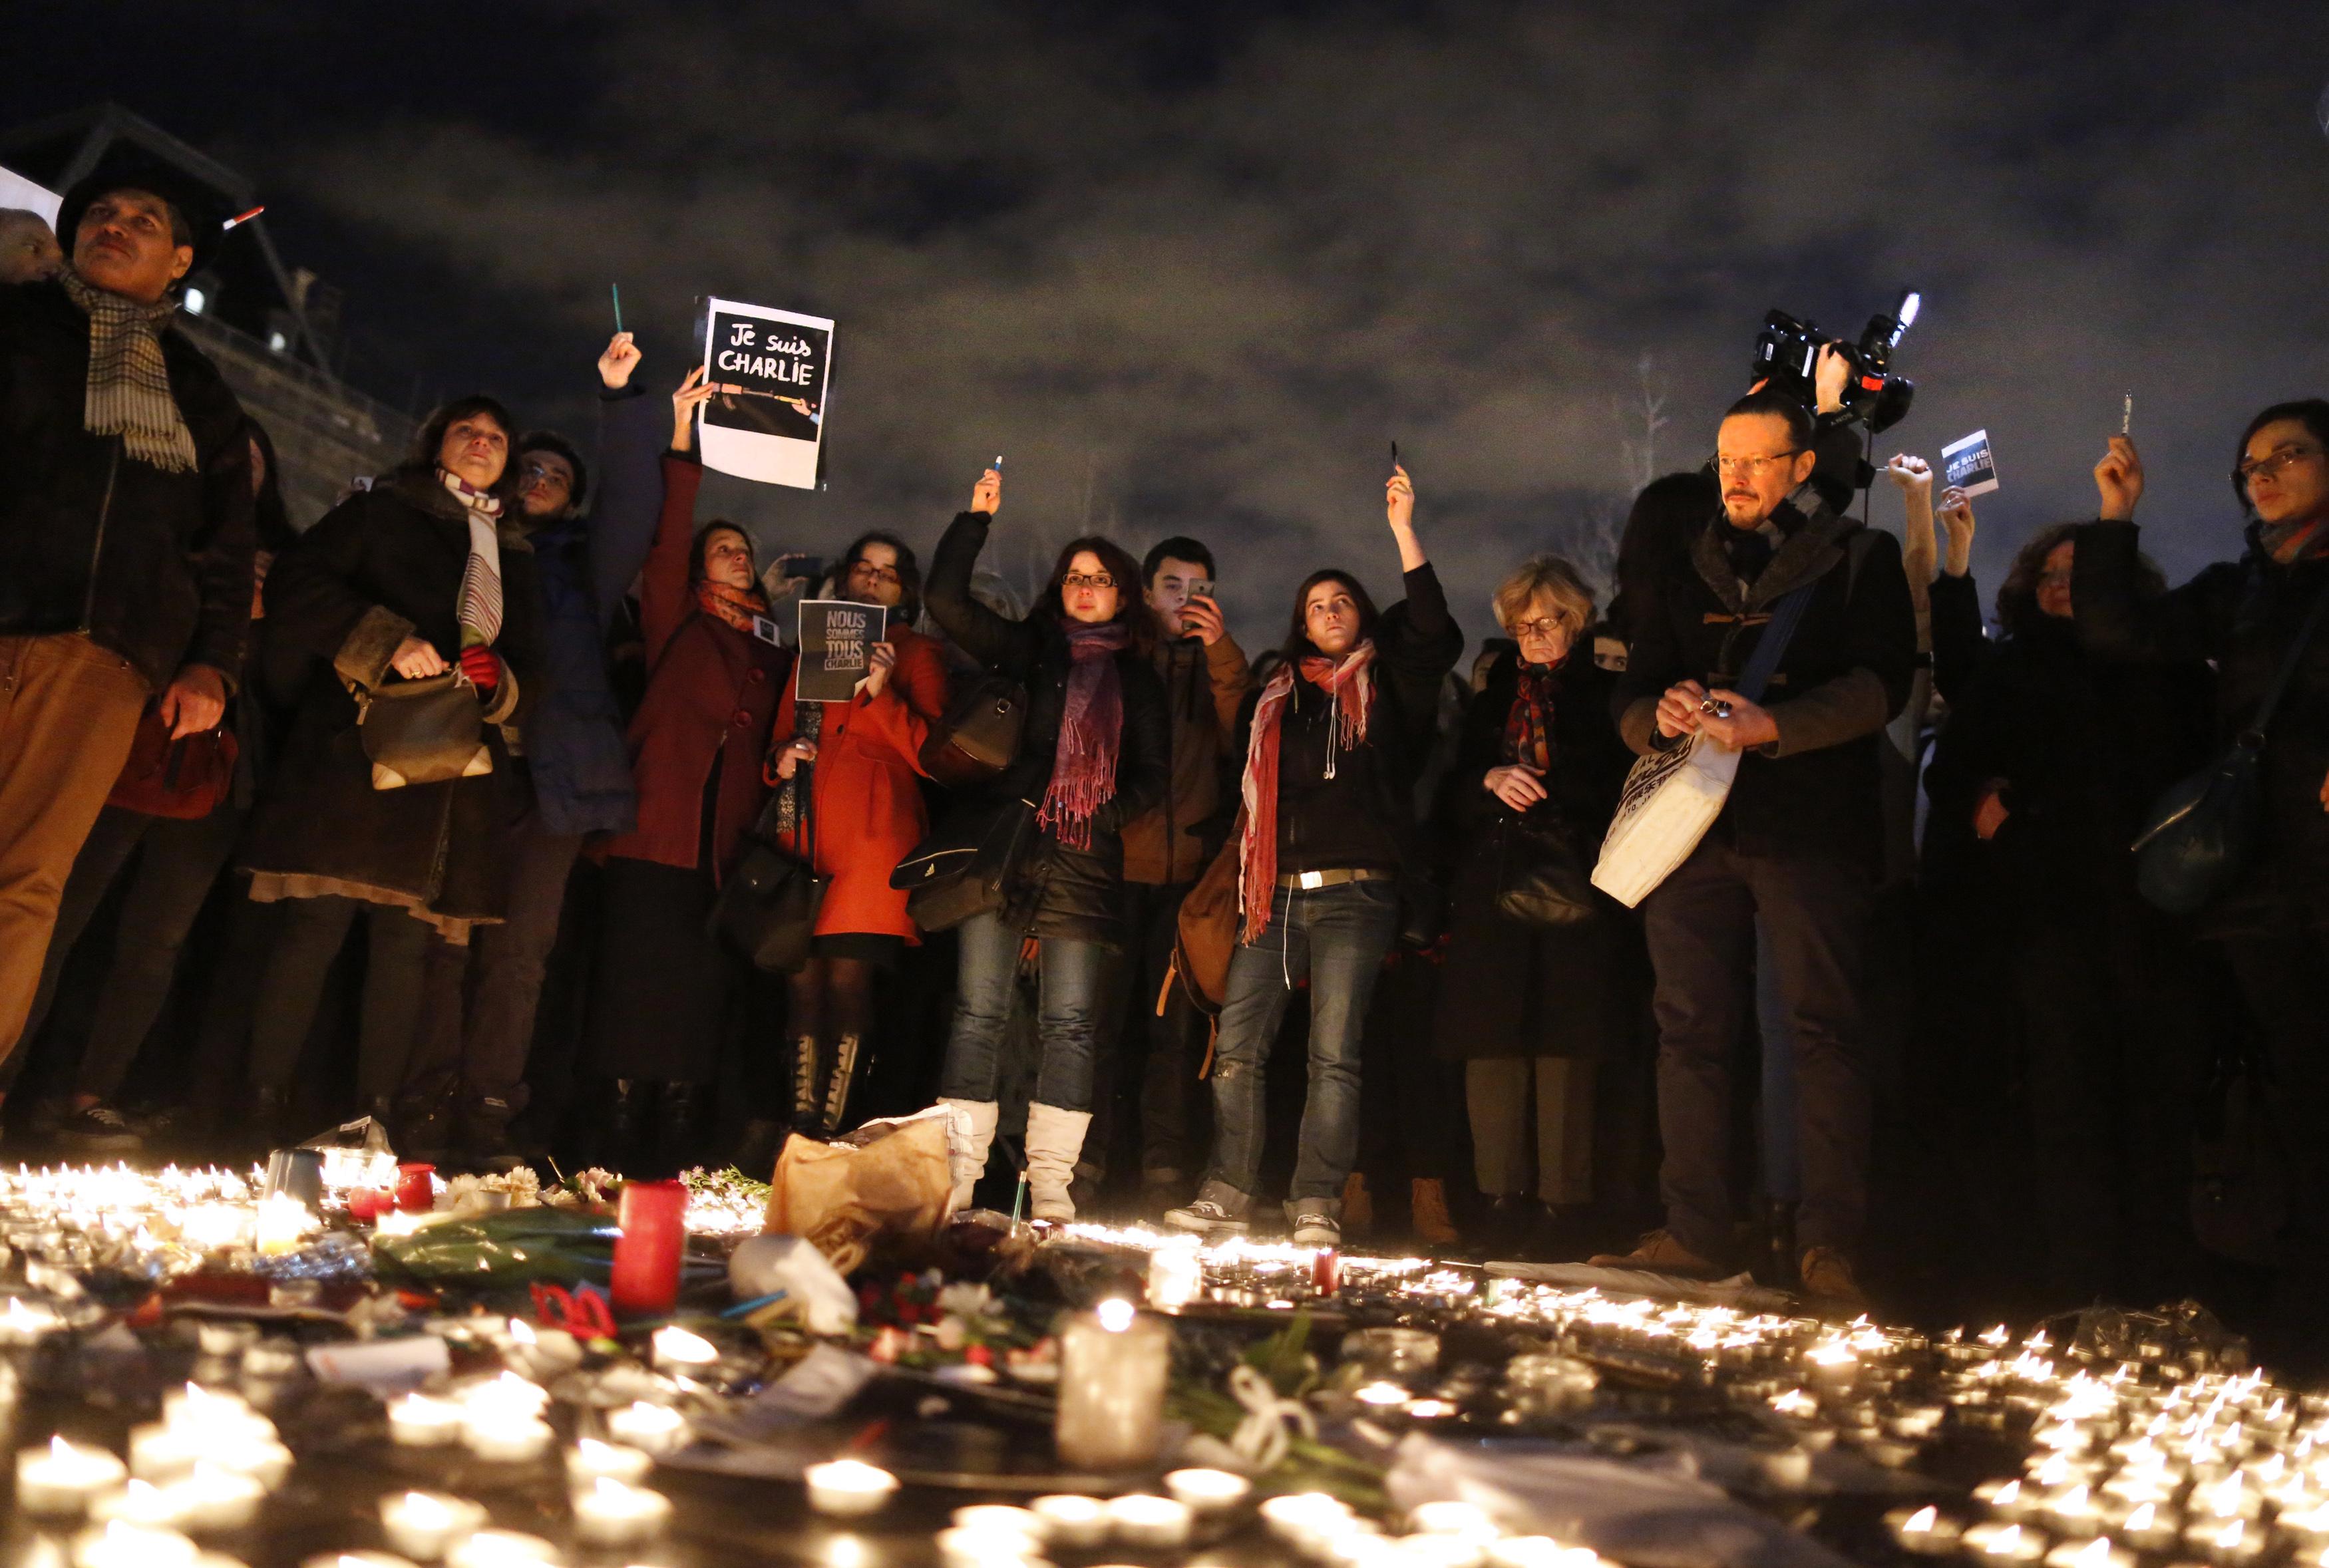 El Estado Islámico califica de “héroes” a los autores del atentado en Francia